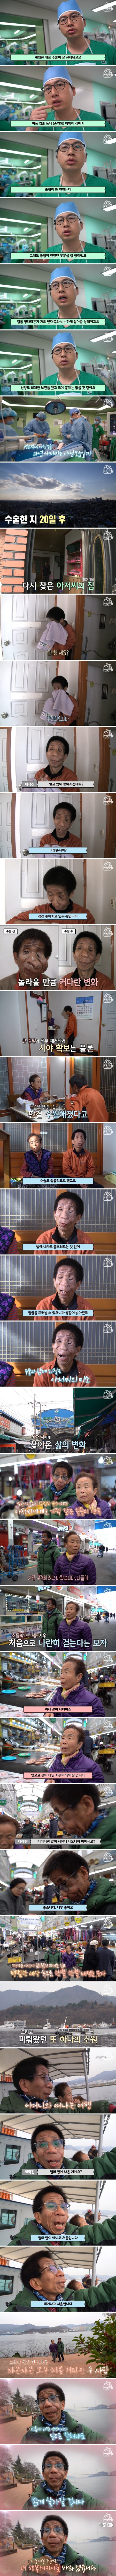 [2부] 얼굴을 뒤덮은 혹, 신경섬유종을 앓고 있는 김진욱 씨의 사연 (2).jpg